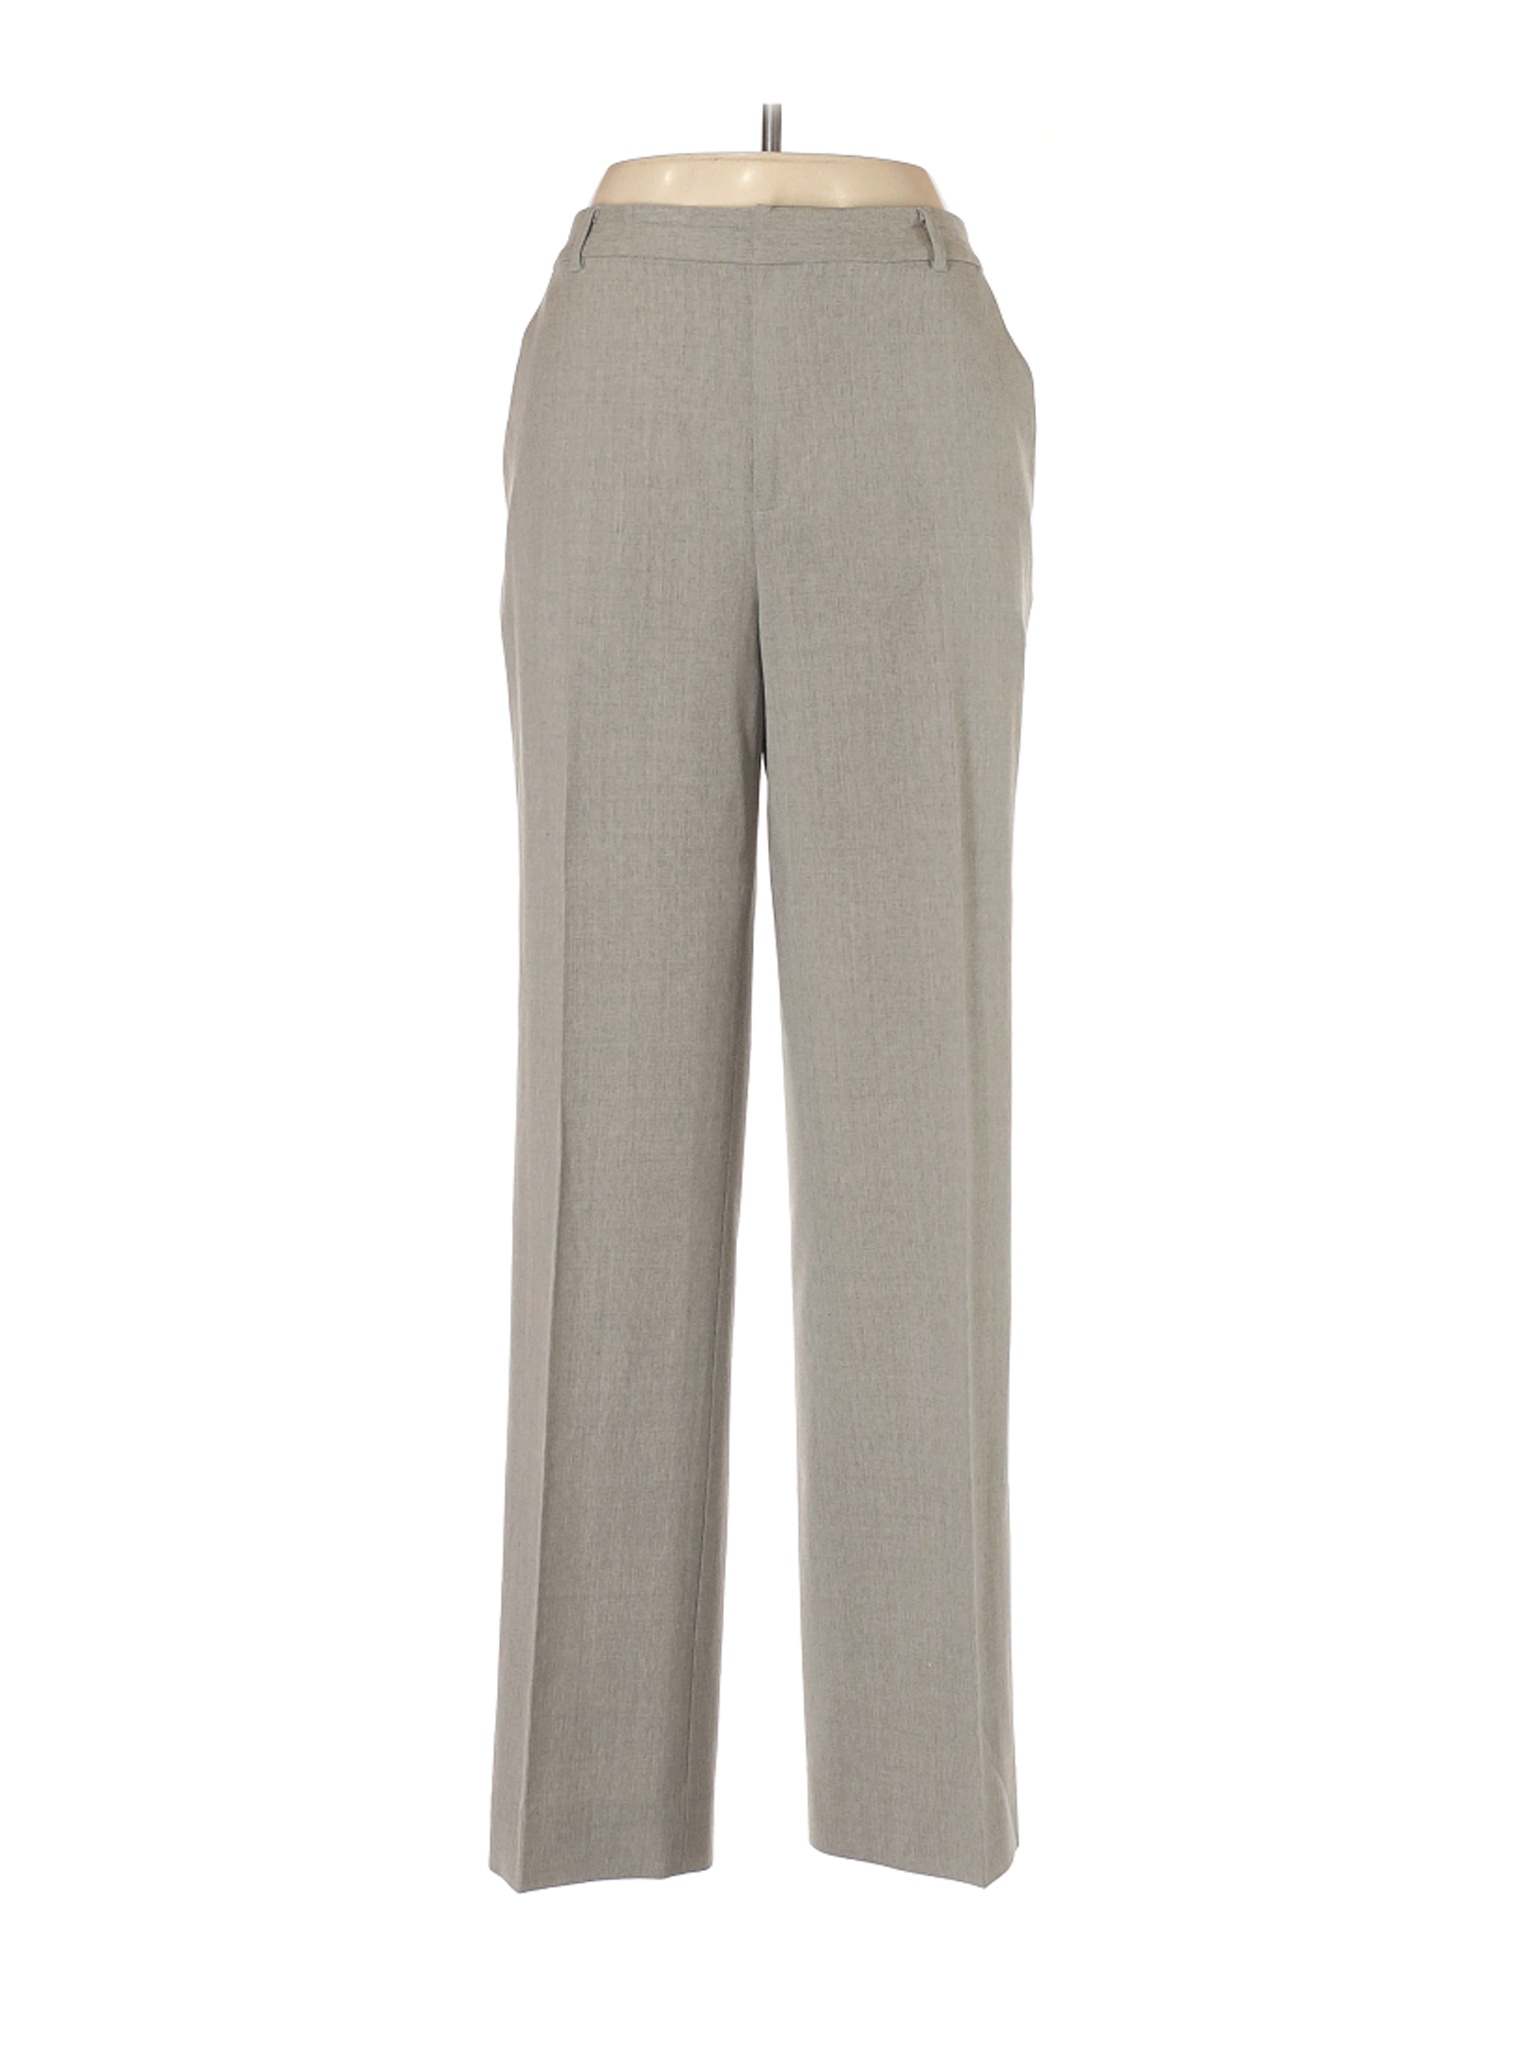 Lauren by Ralph Lauren Women Gray Wool Pants 8 | eBay